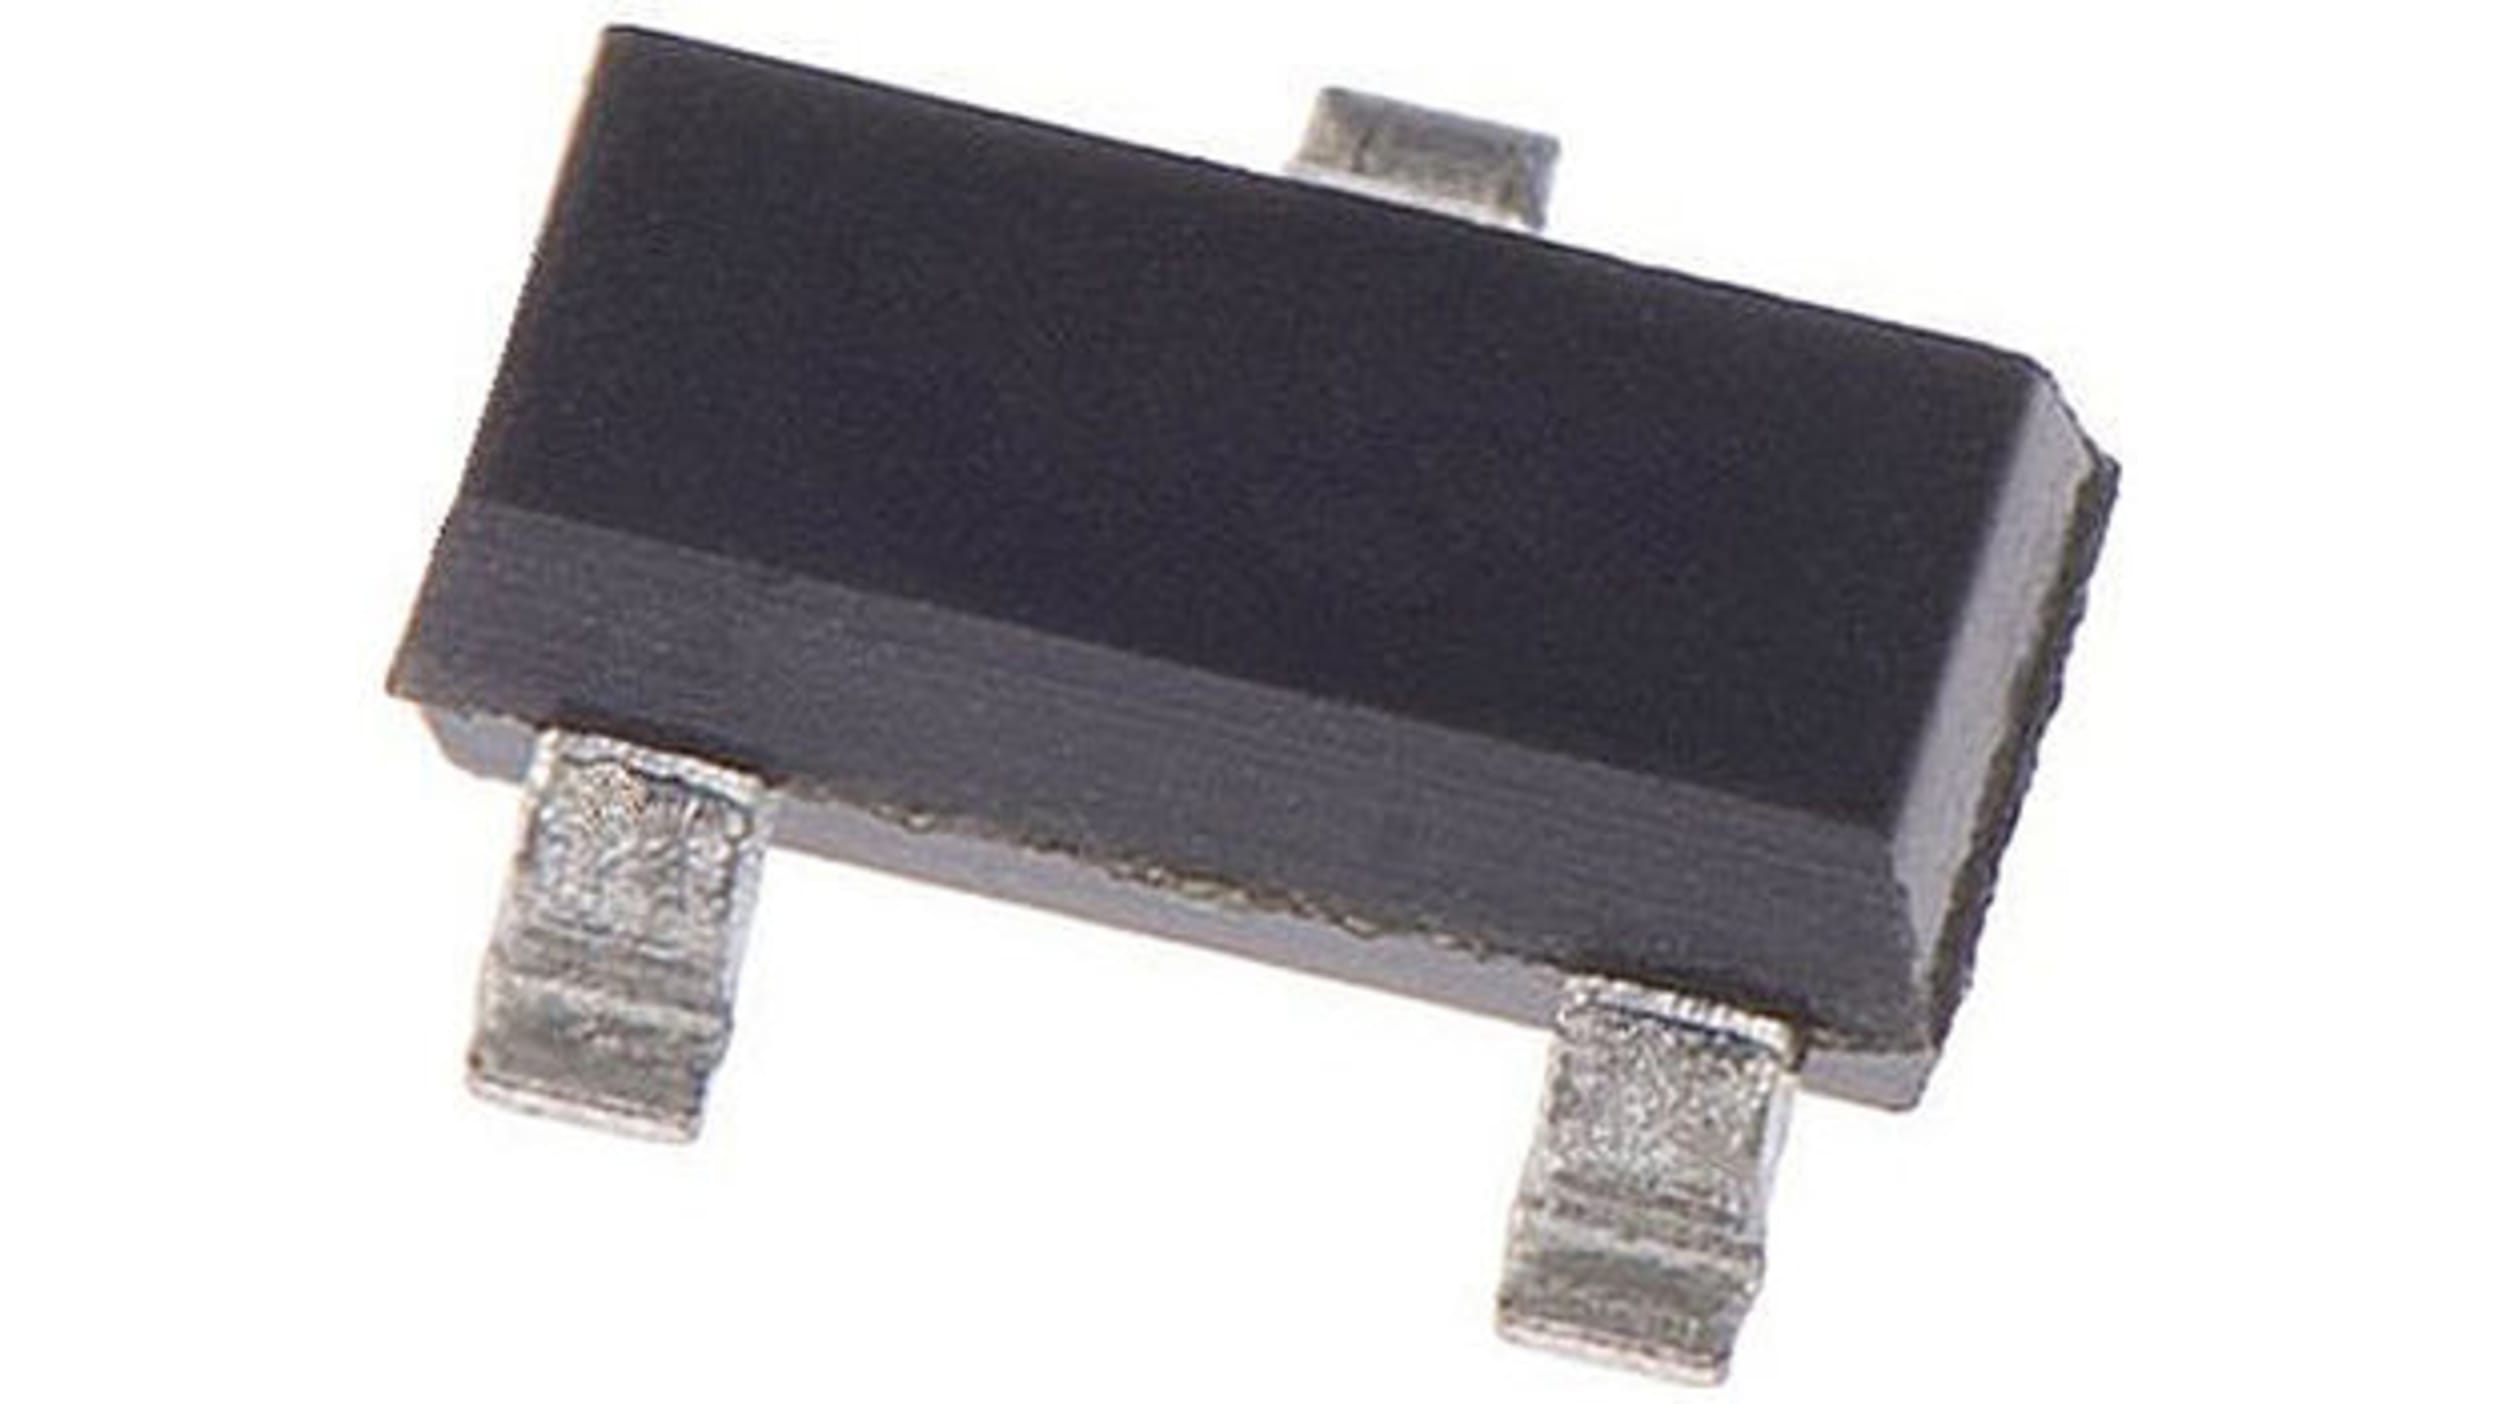 【 2SK1399-A】4個セット,Renesas Electronics Nチャンネル MOSFETトランジスタ50 V 100 mA 表面実装 パッケージSC-59 3 ピン